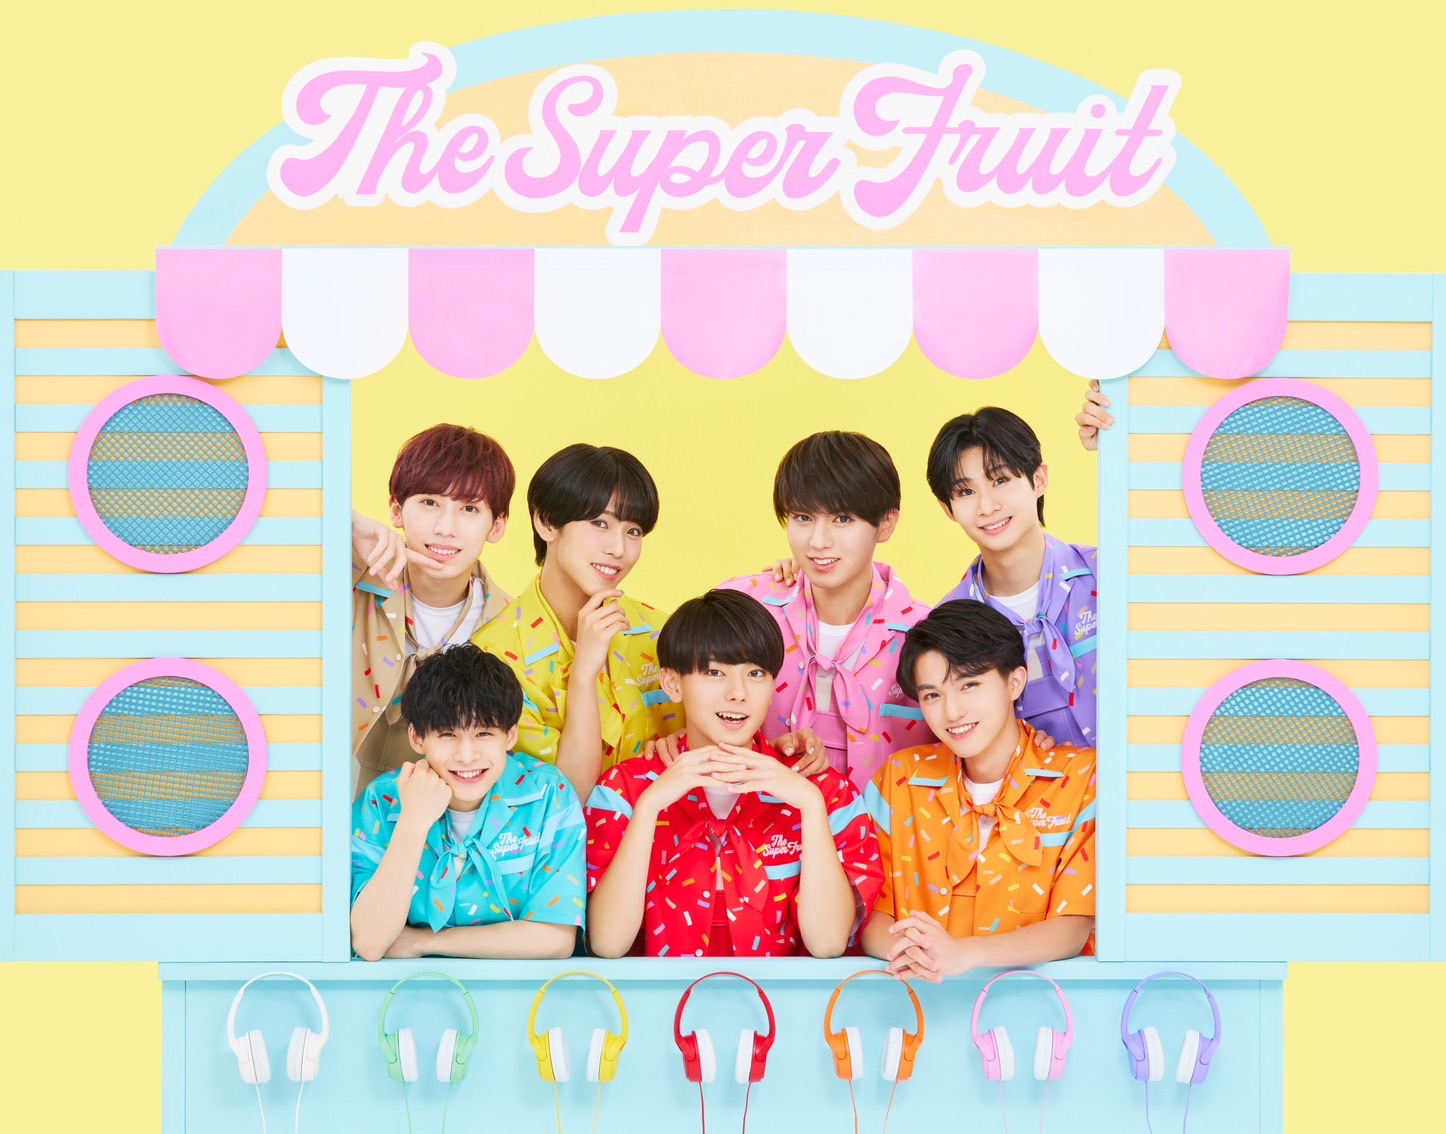 THE SUPER FRUIT | Jpop Wiki | Fandom